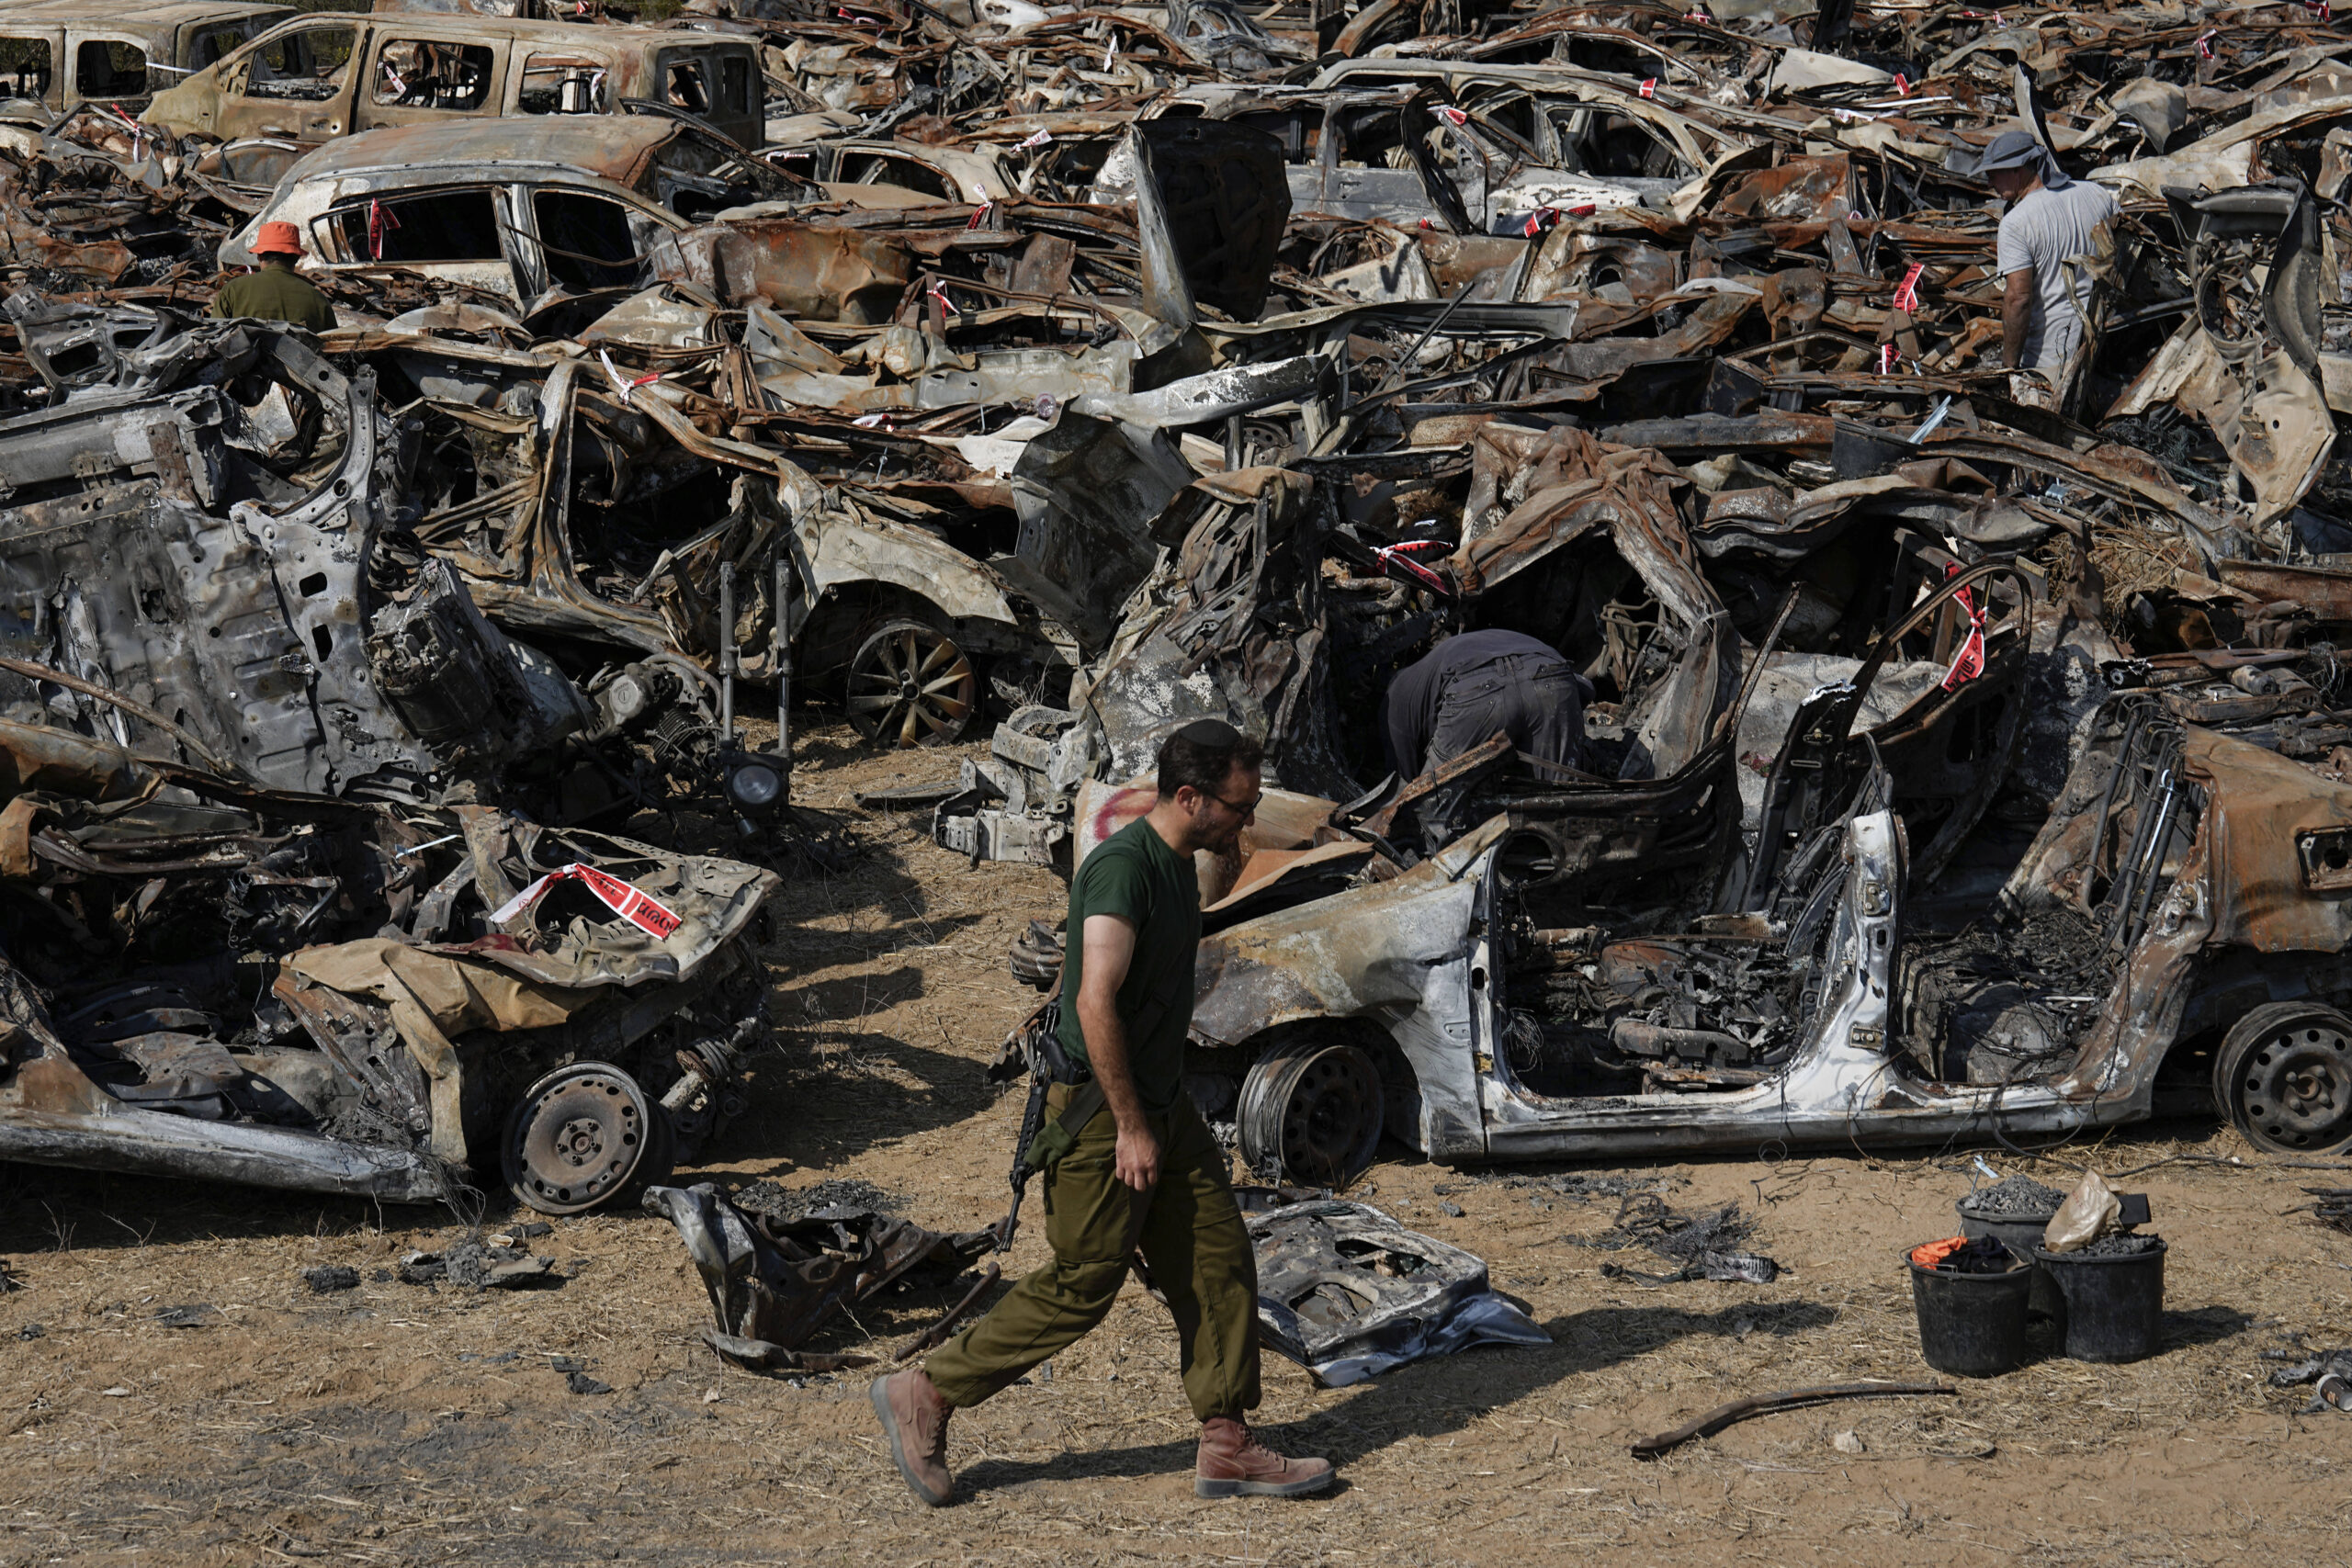 Les forces de sécurité israéliennes inspectent les véhicules calcinés lors de l'attaque transfrontalière sanglante du 7 octobre par des militants du Hamas, à l'extérieur de la ville de Netivot, dans le sud d'Israël. Les véhicules ont été rassemblés et placés dans une zone proche de la frontière de Gaza après l'attaque, qui a fait 1 200 morts et 240 otages. © AP Photo/Ariel Schalit